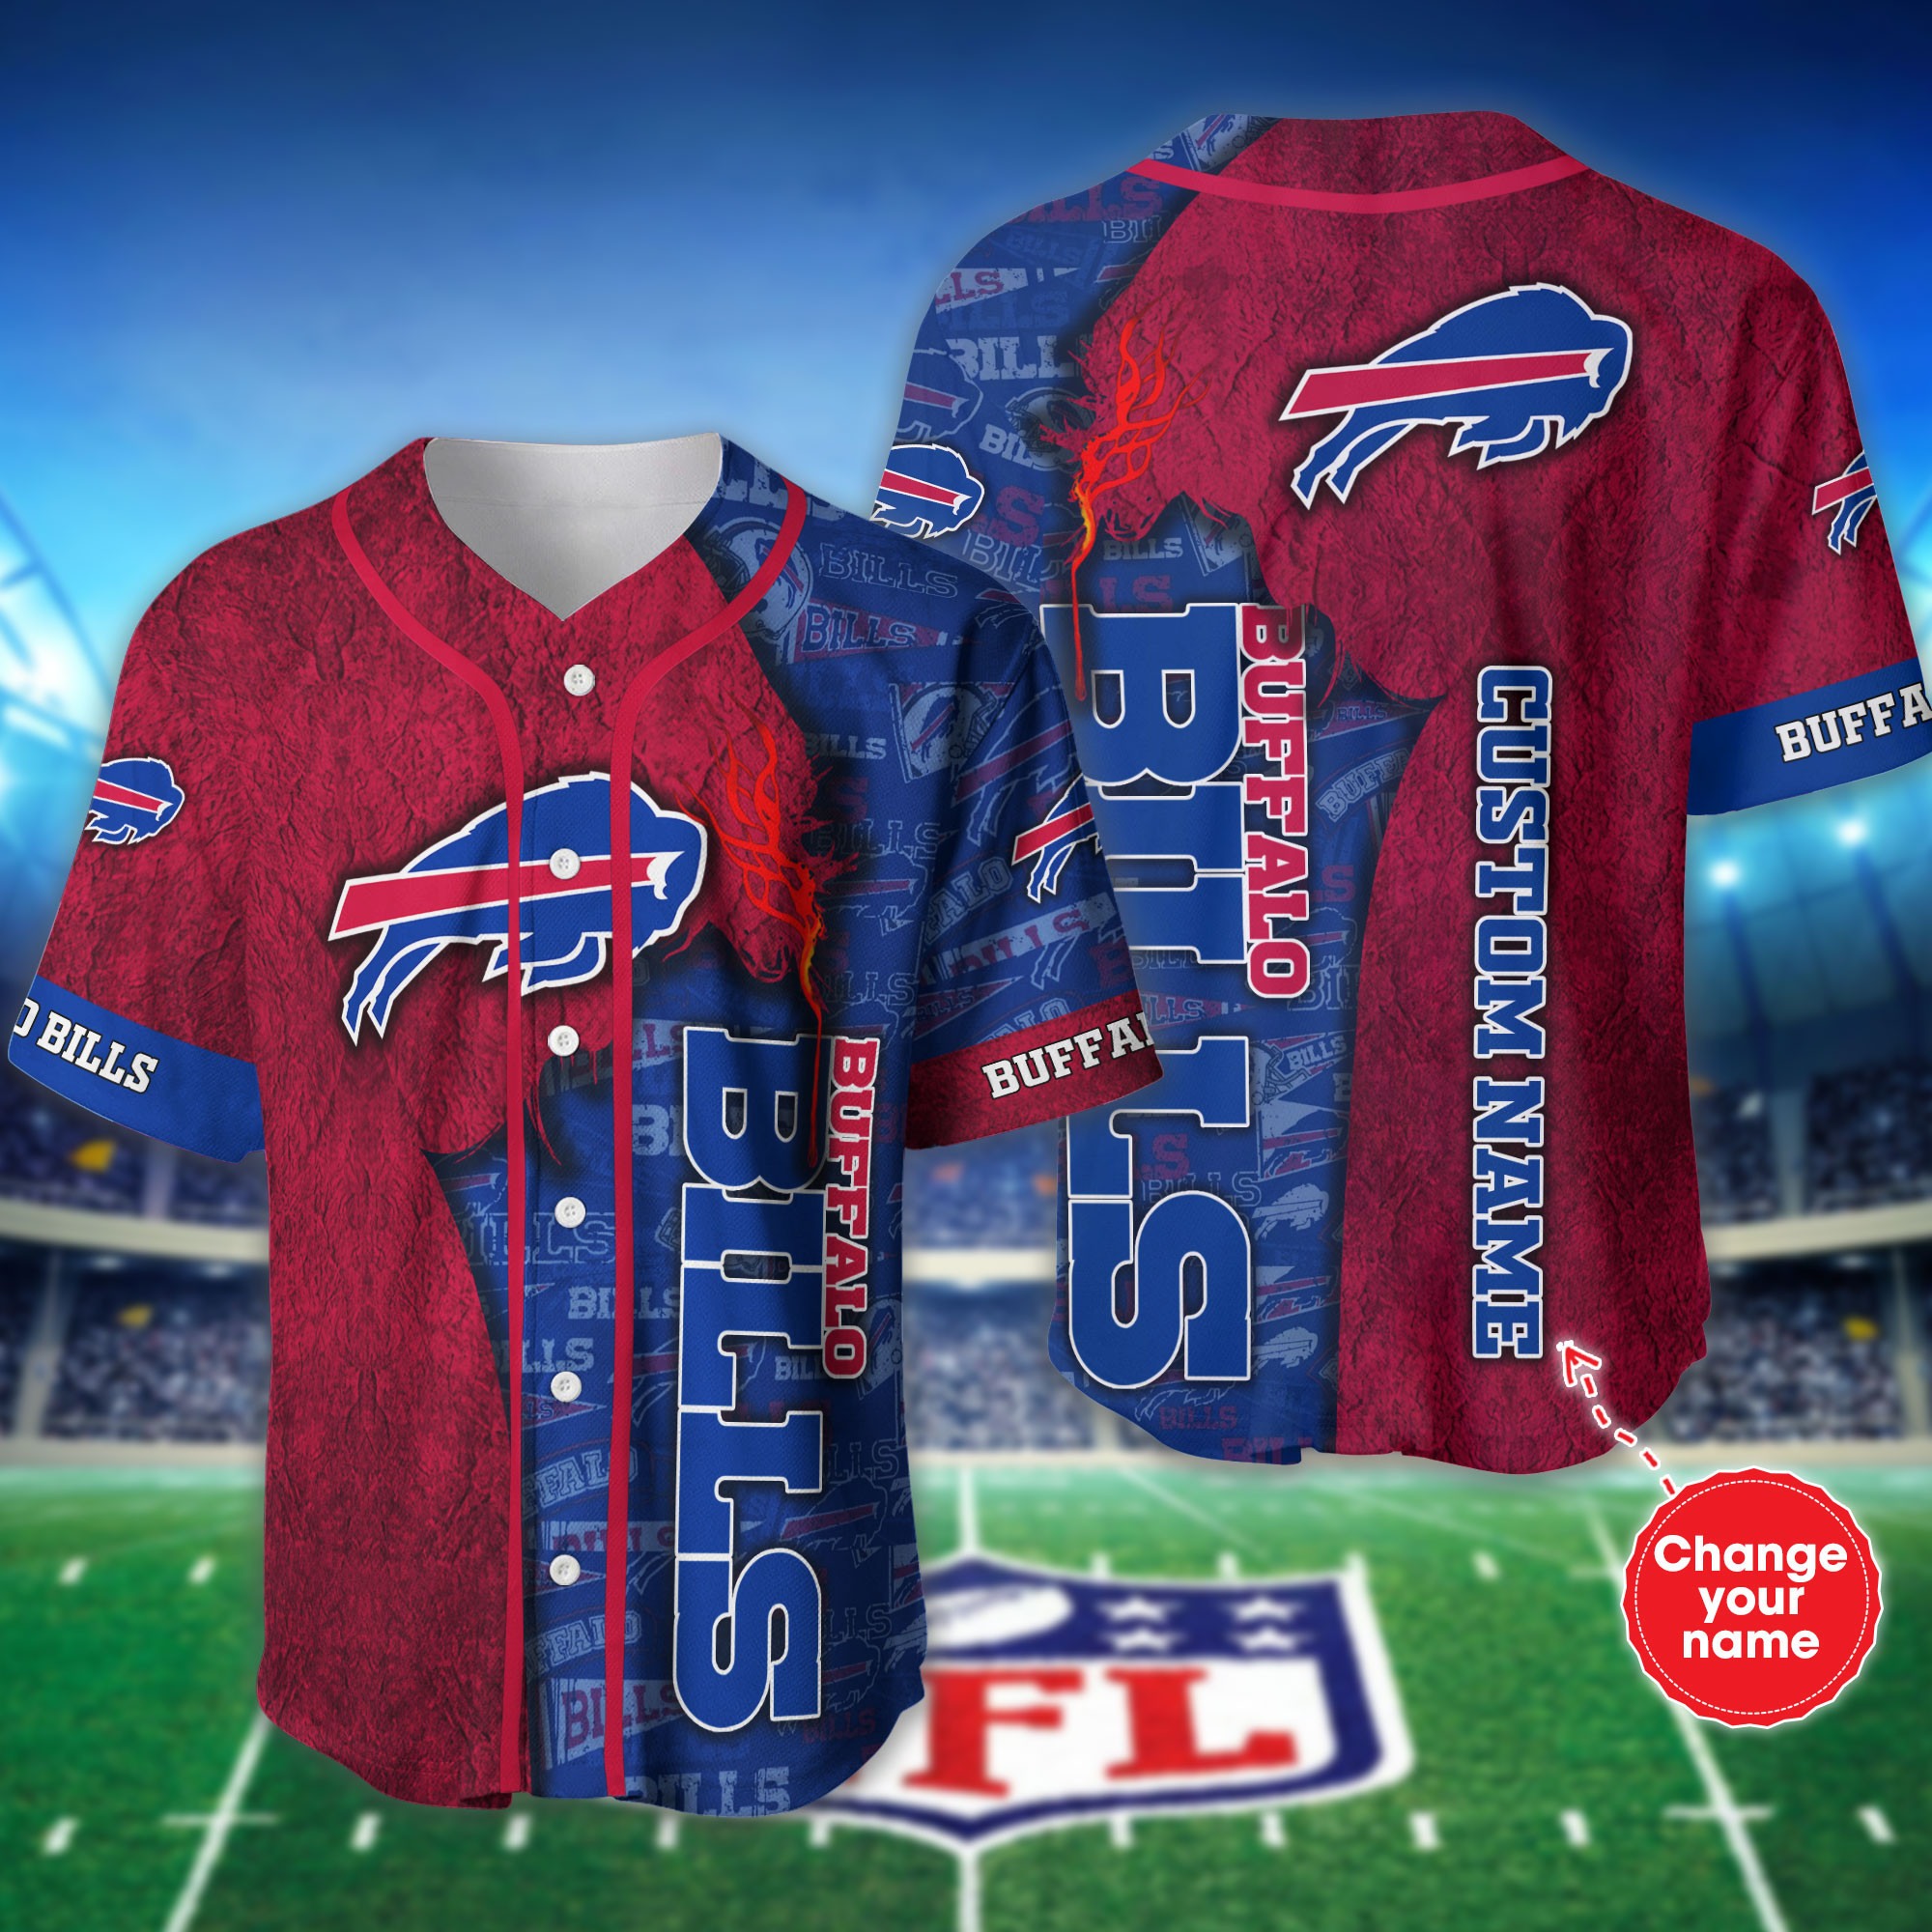 Personalized Buffalo Bills Baseball Jersey shirt for fans